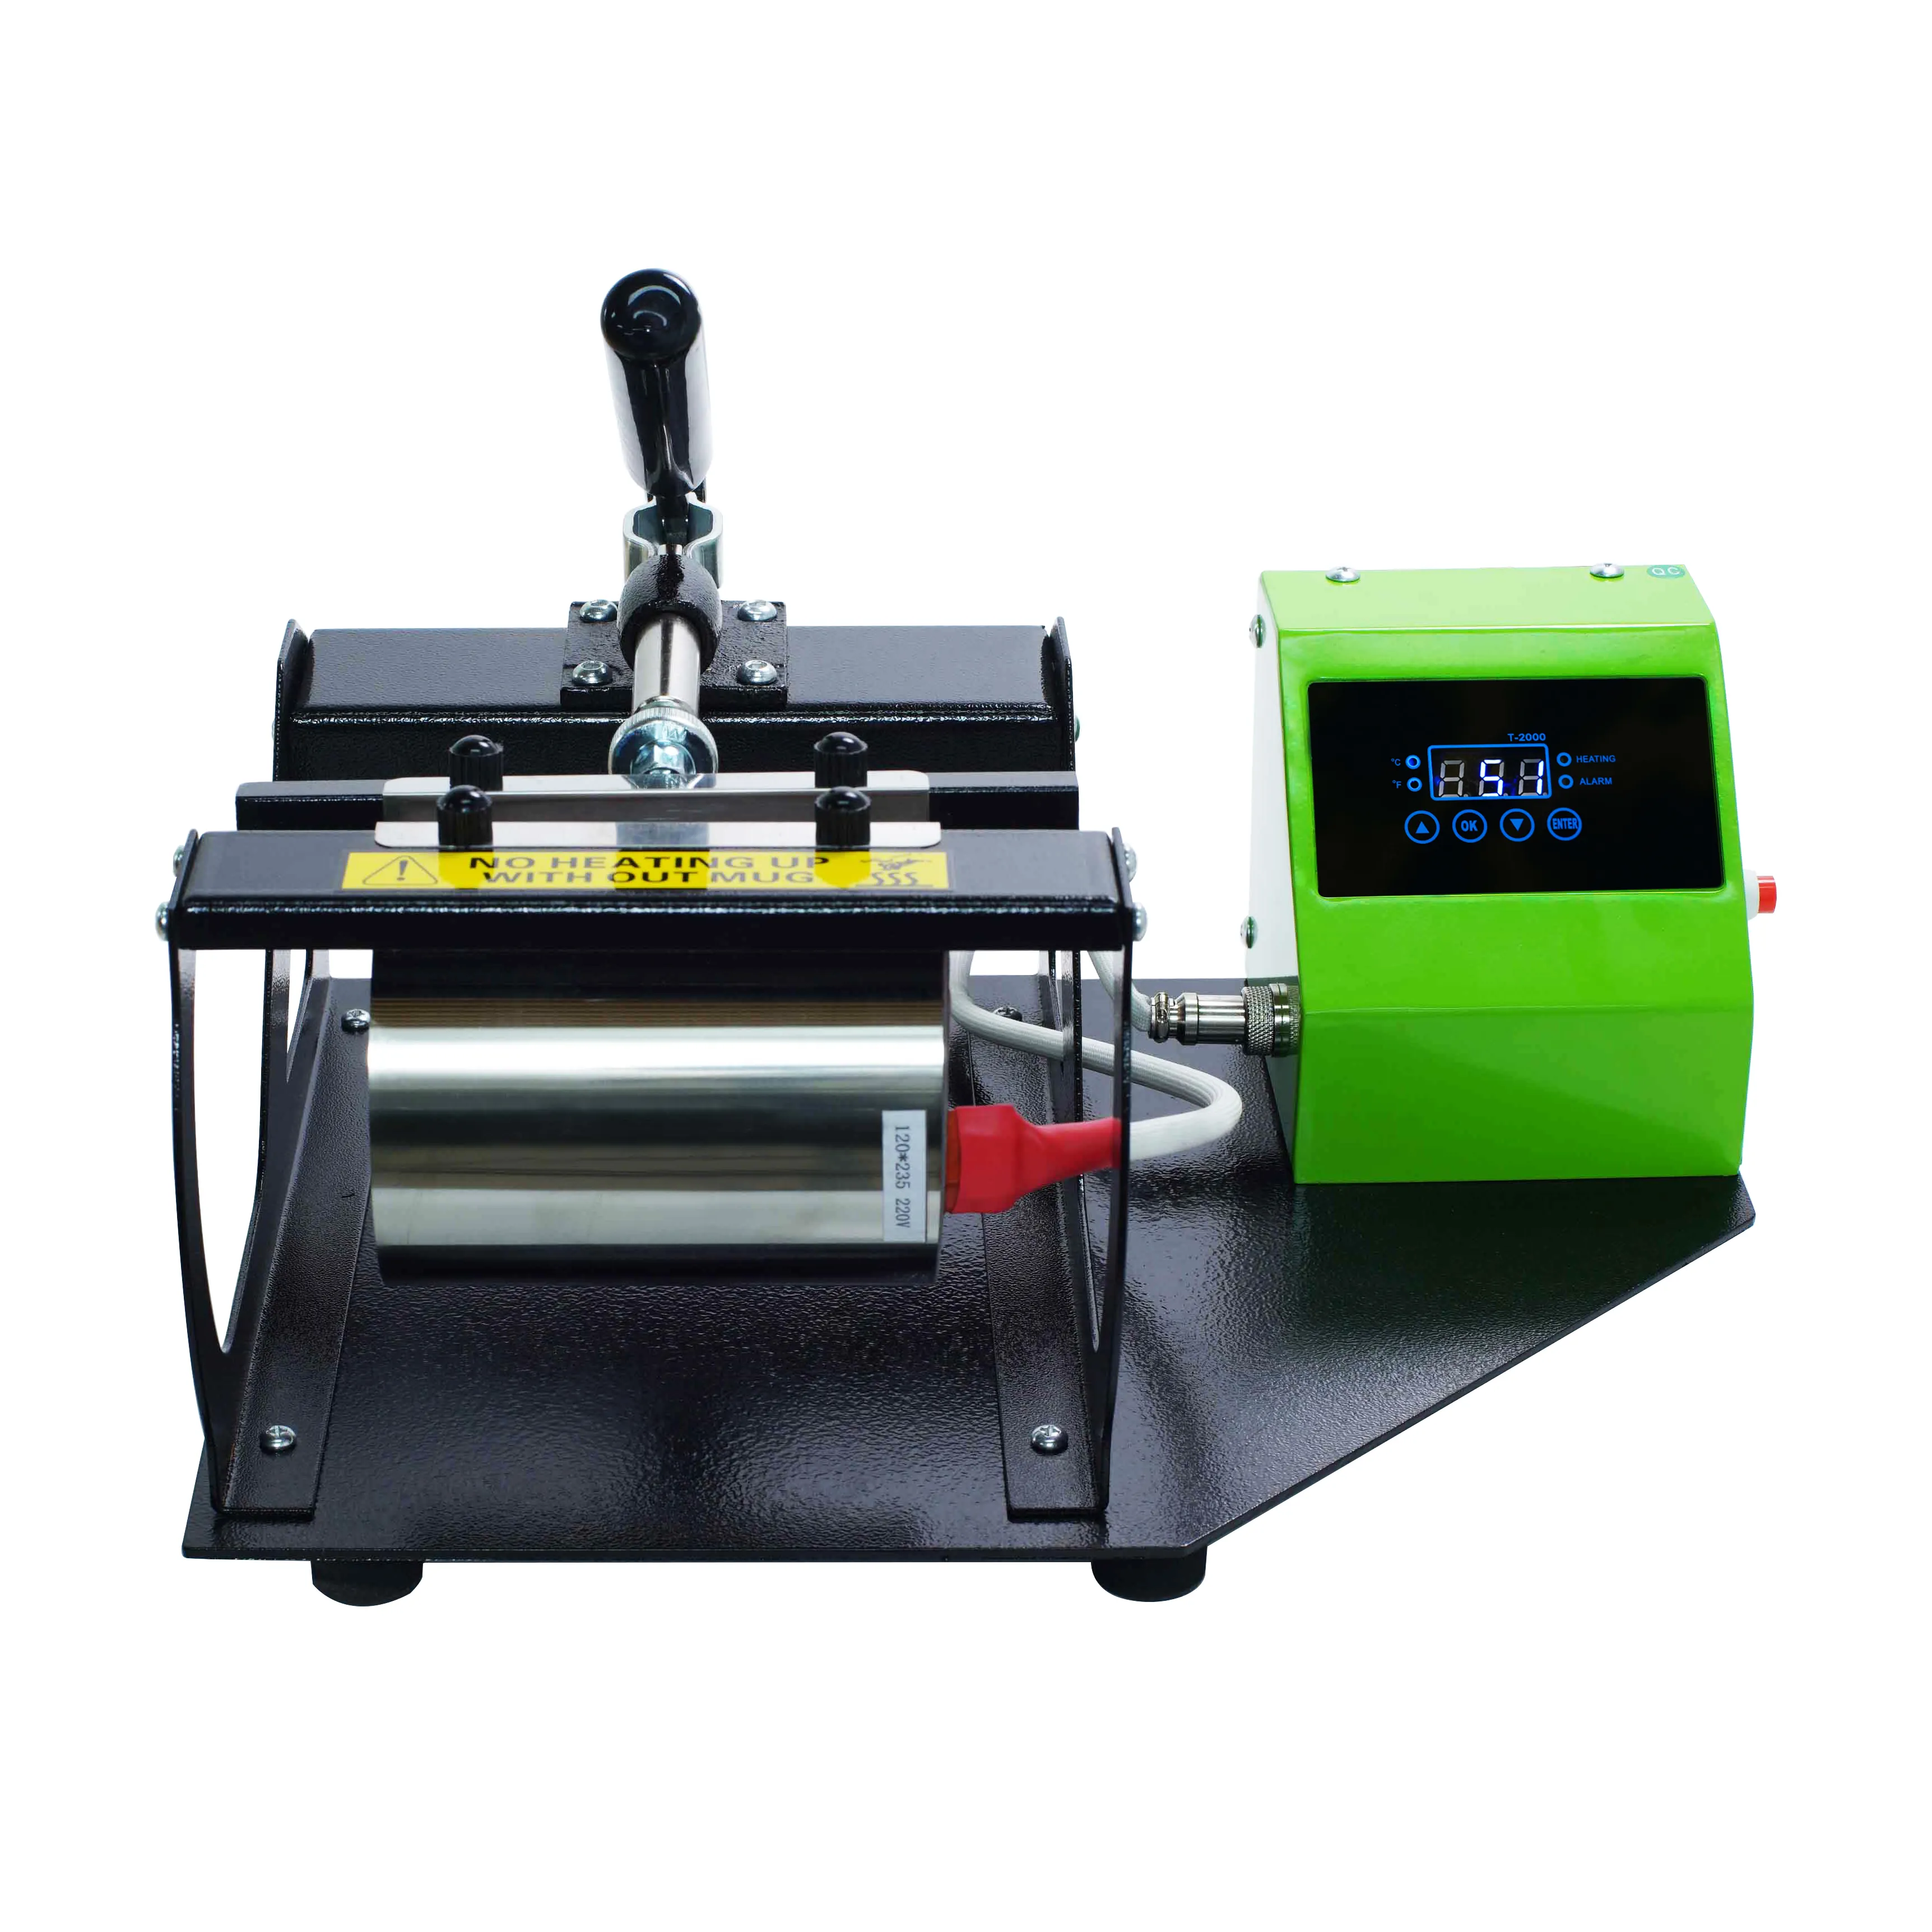 Máquina de prensado en caliente para tazas, máquina de impresión Lvd Manual de la India de 11oz y 10oz, precio bajo, 5 años, 10KG/22lbs